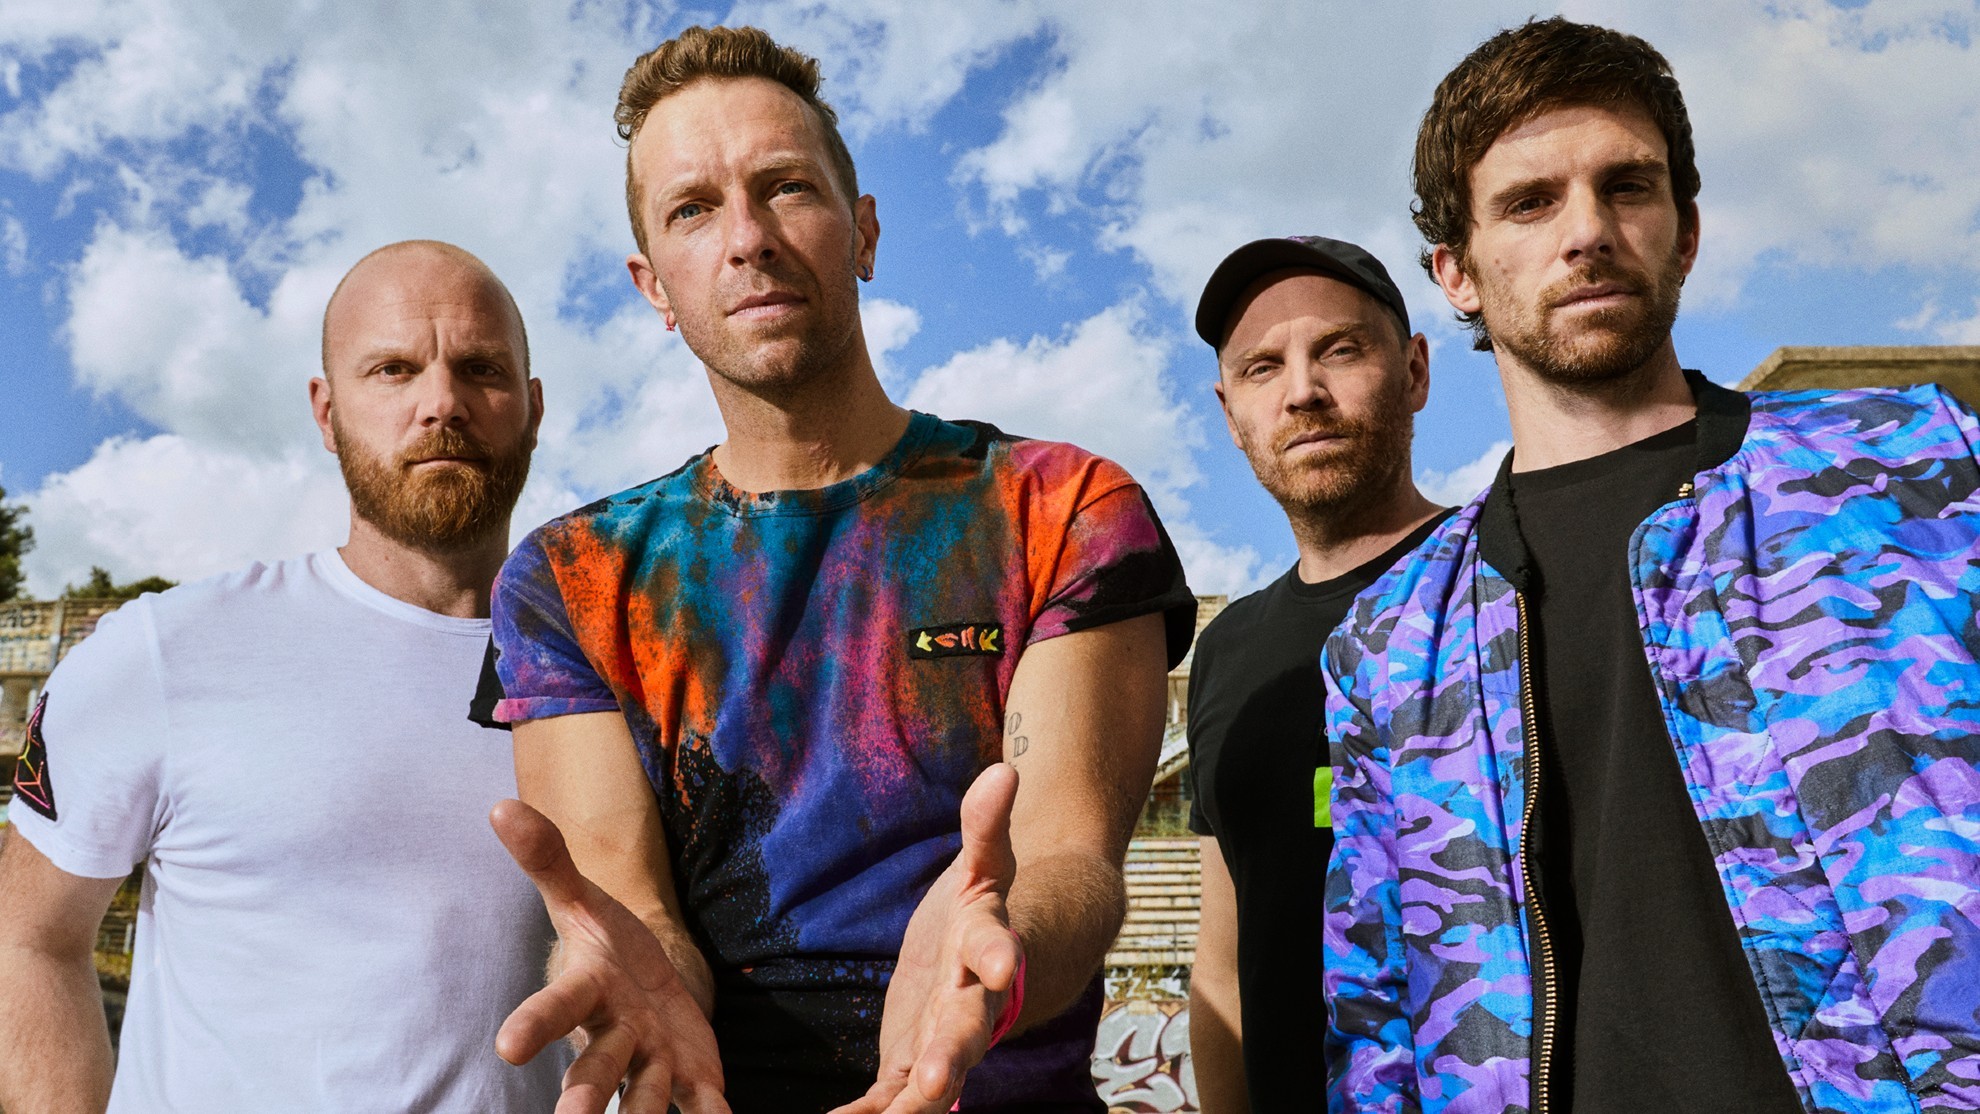 Coldplay - Music Of The Spheres World Tour - BMW - Show Battery - baterias recicladas - BMW i3 - gira mundial